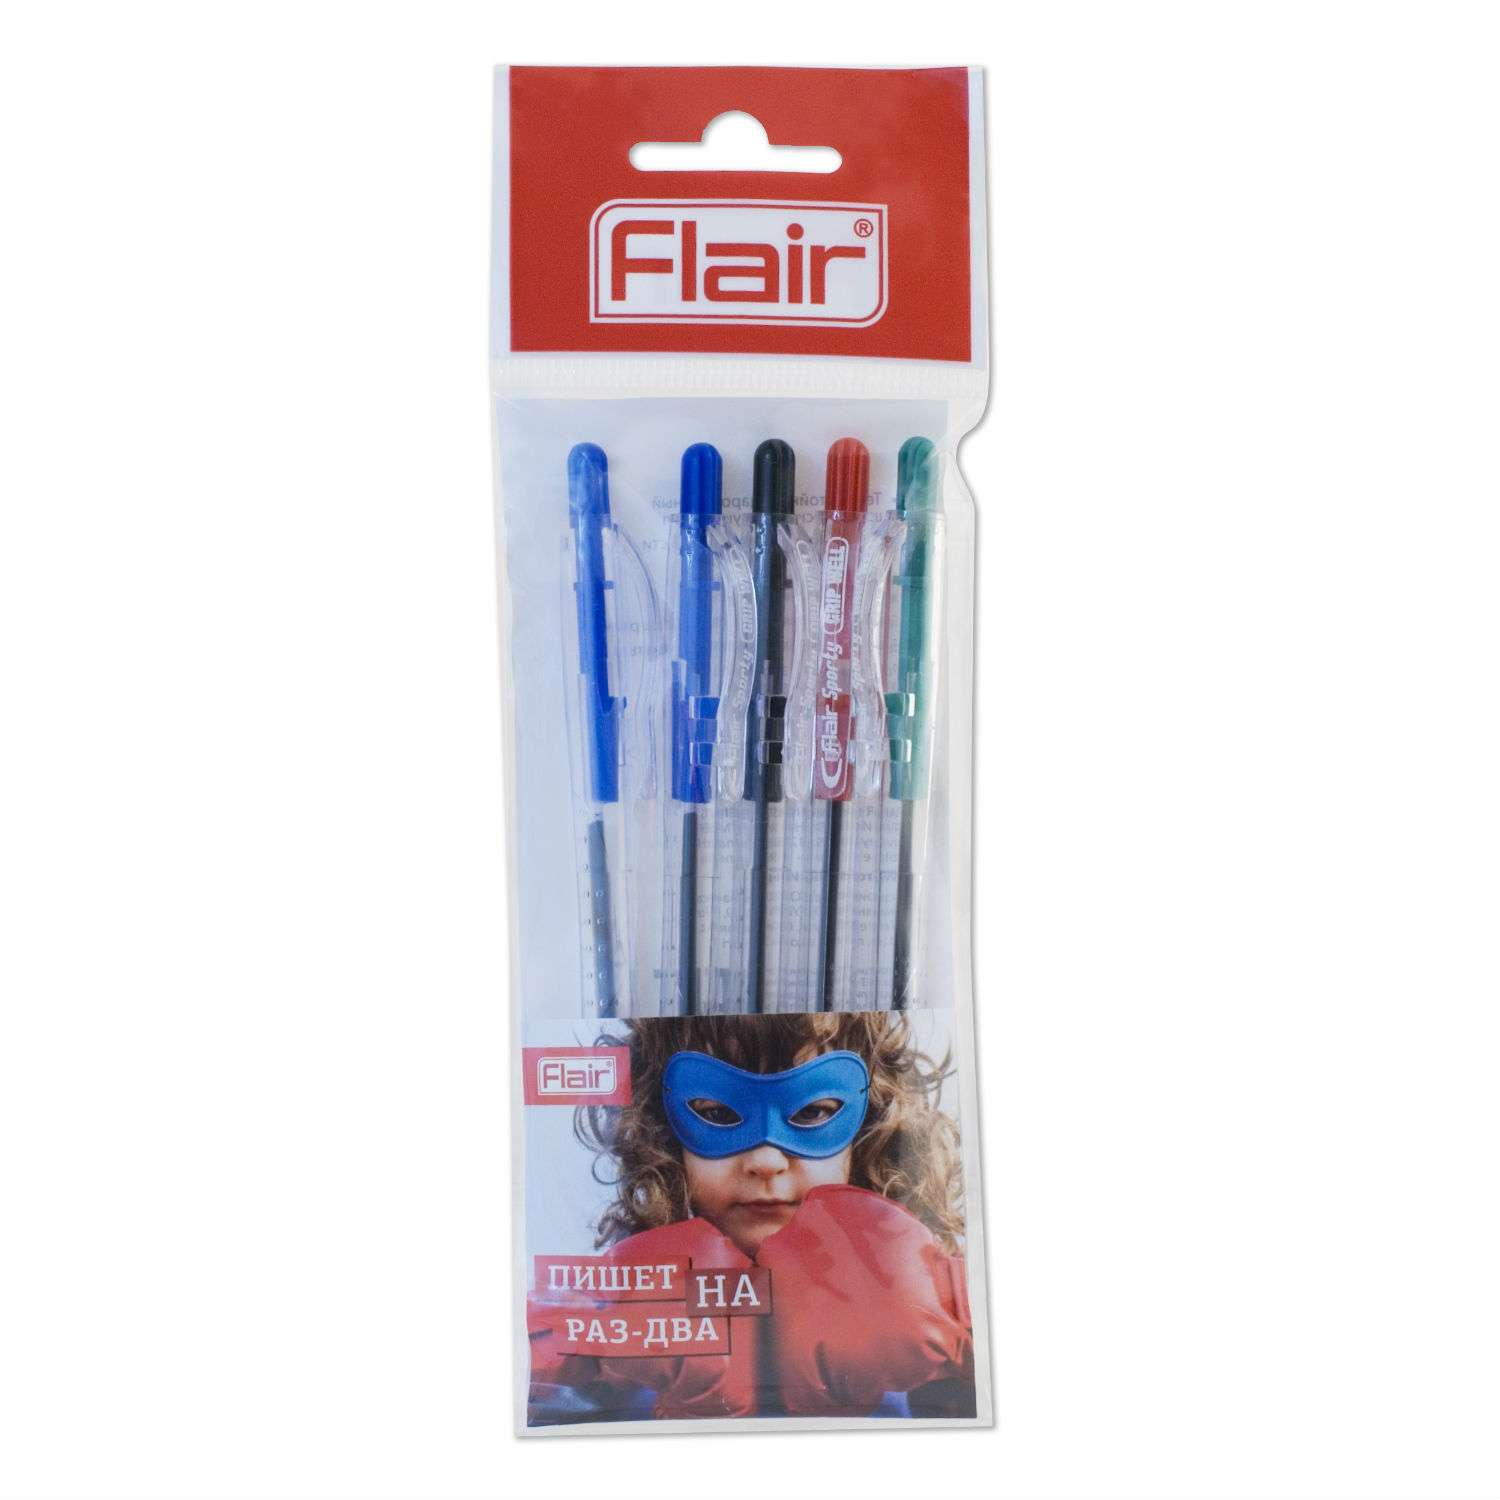 Шариковые ручки FLAIR gripwell 5 штук - фото 1